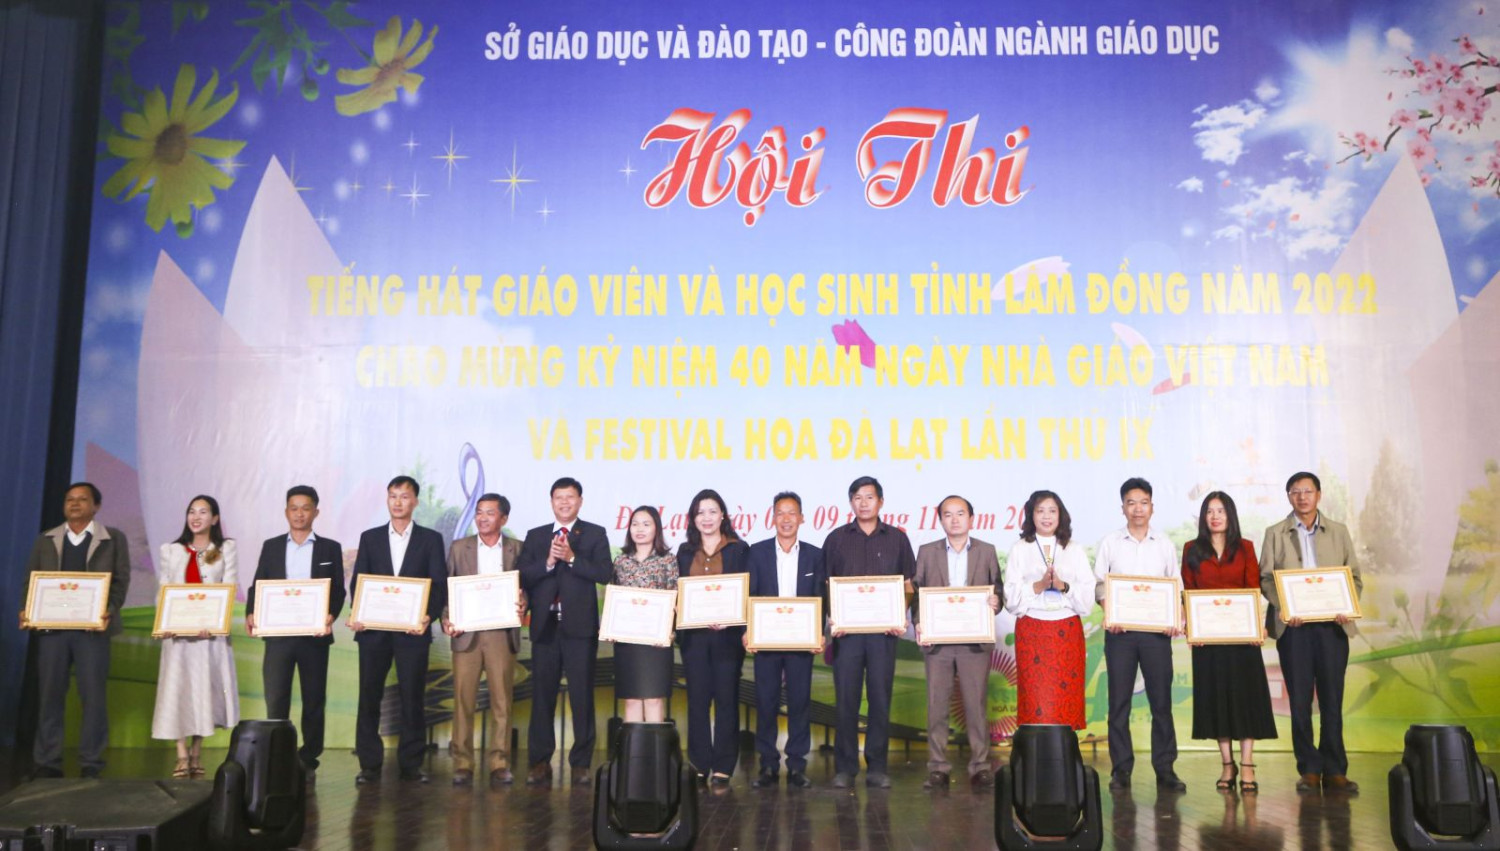 Bế mạc Hội thi Tiếng hát giáo viên và học sinh ngành Giáo dục tỉnh Lâm Đồng năm 2022, cụm Đà Lạt